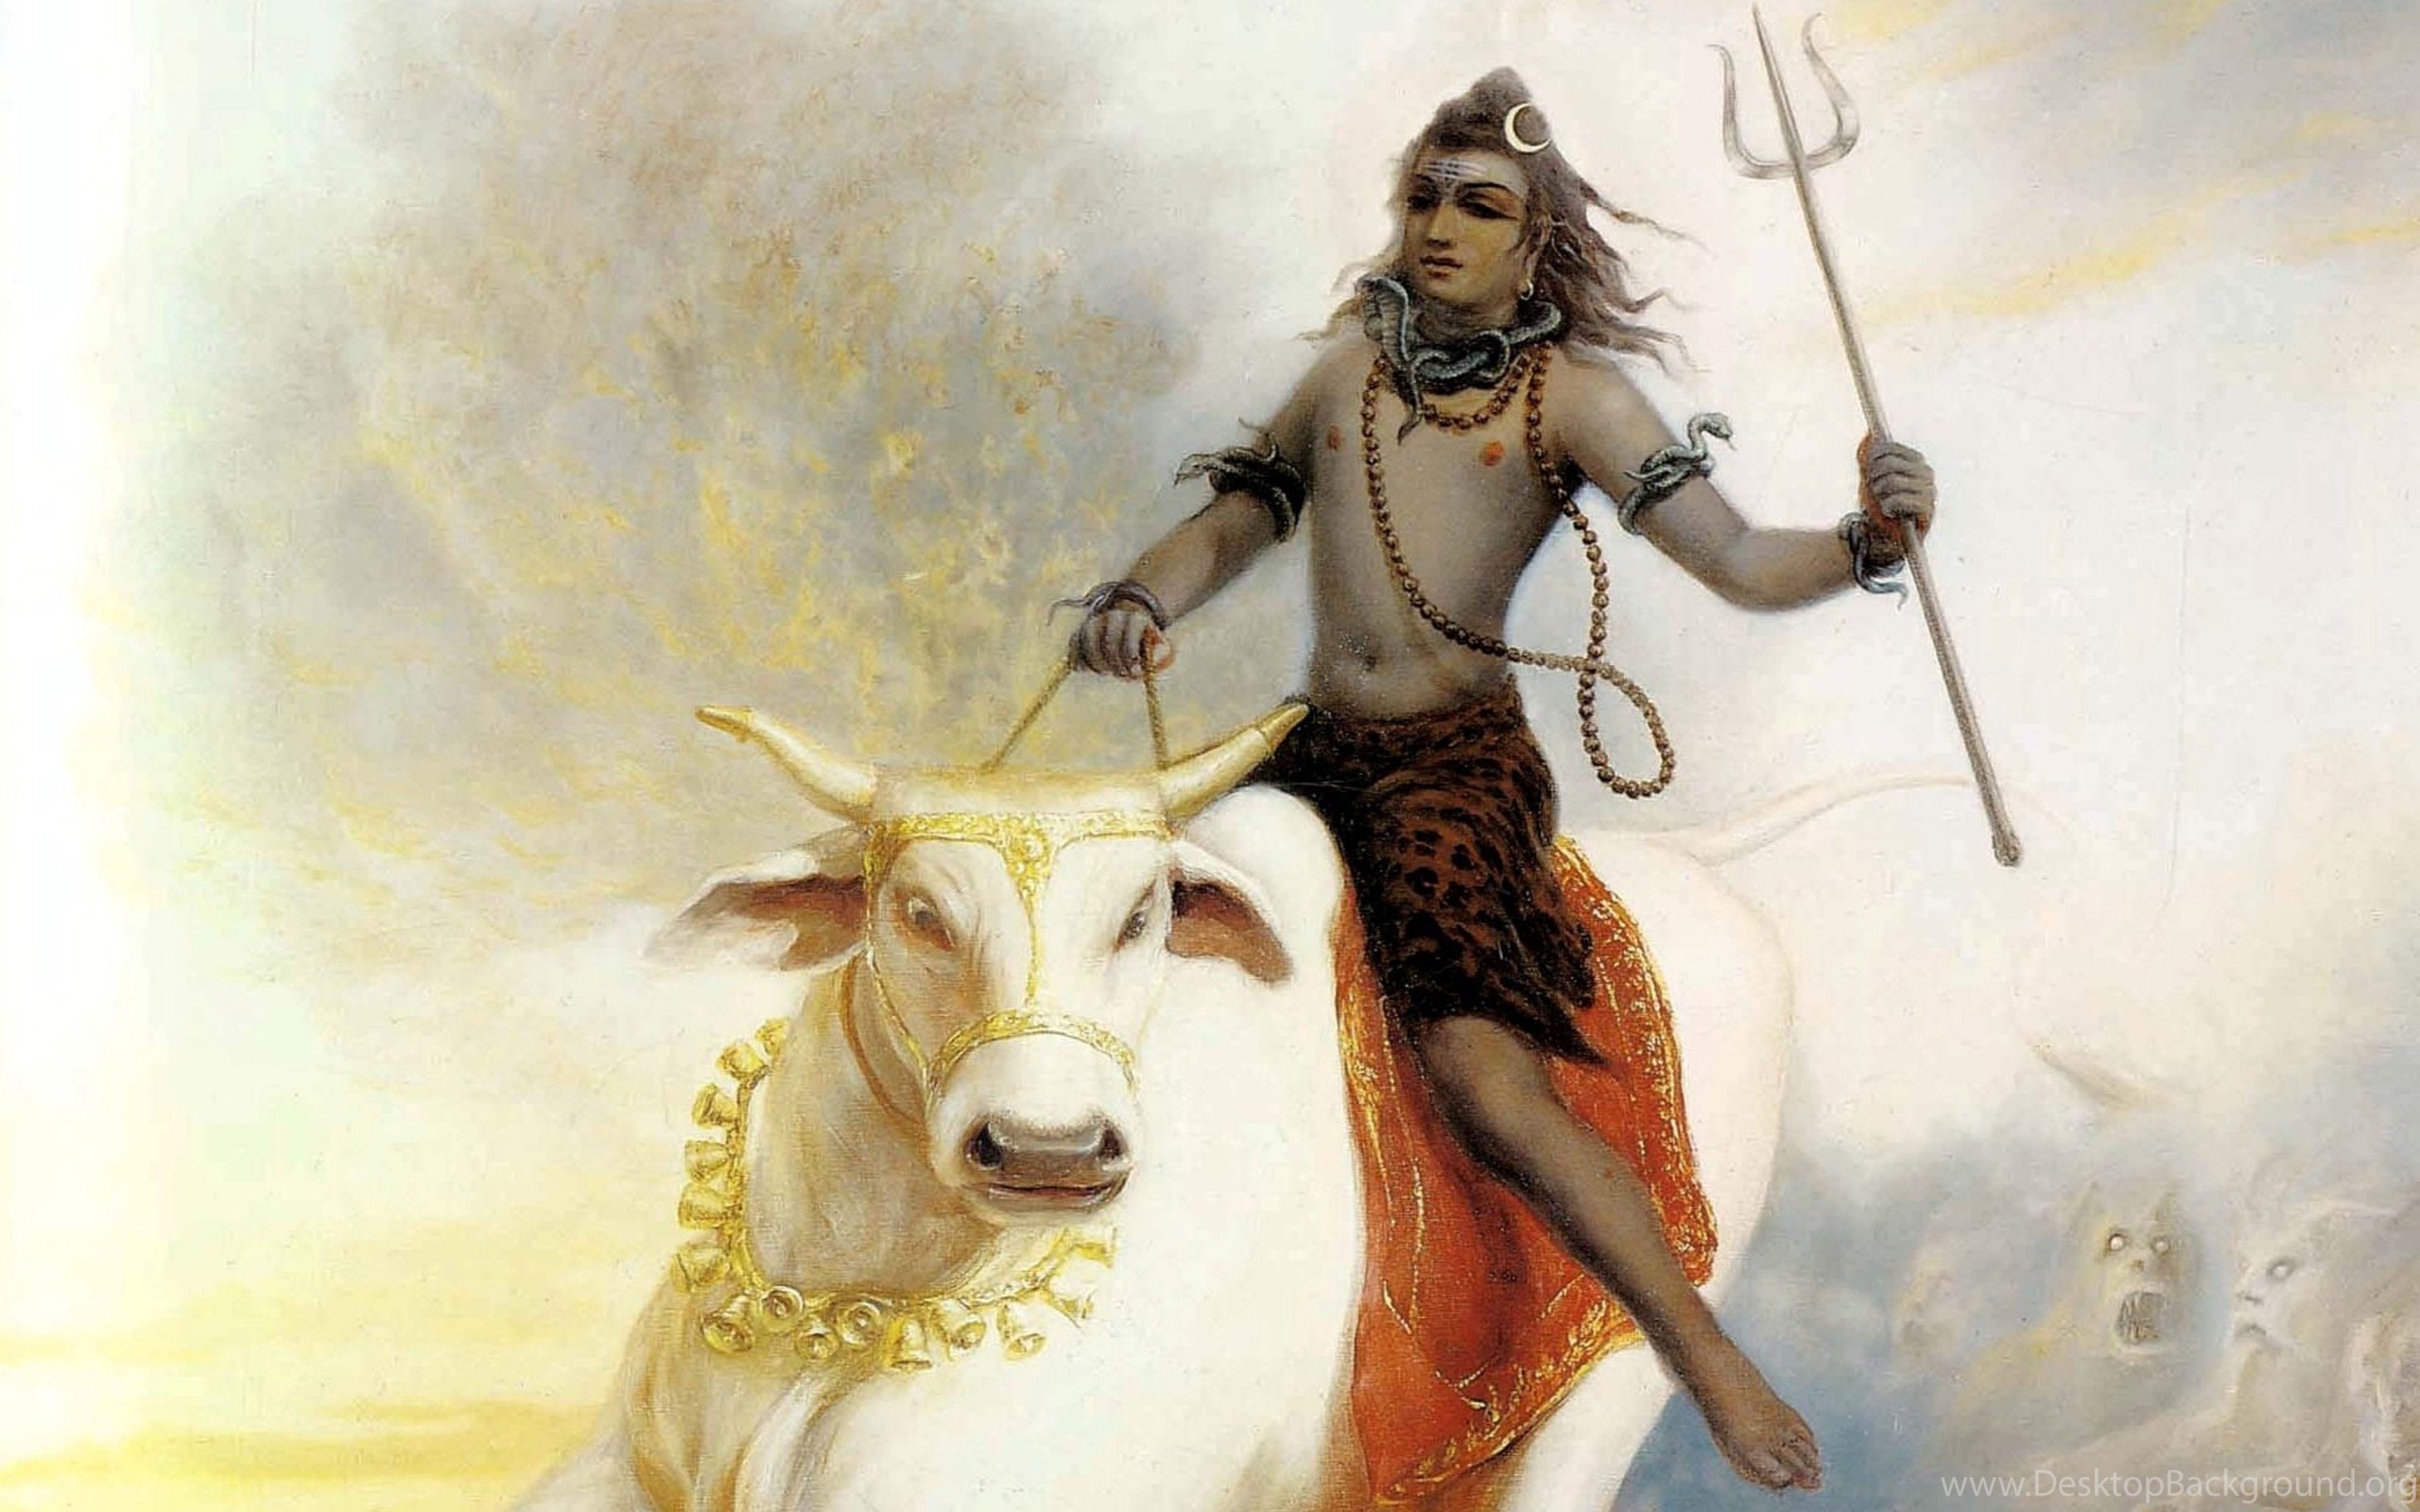 Original Size - Lord Shiva On Nandi , HD Wallpaper & Backgrounds